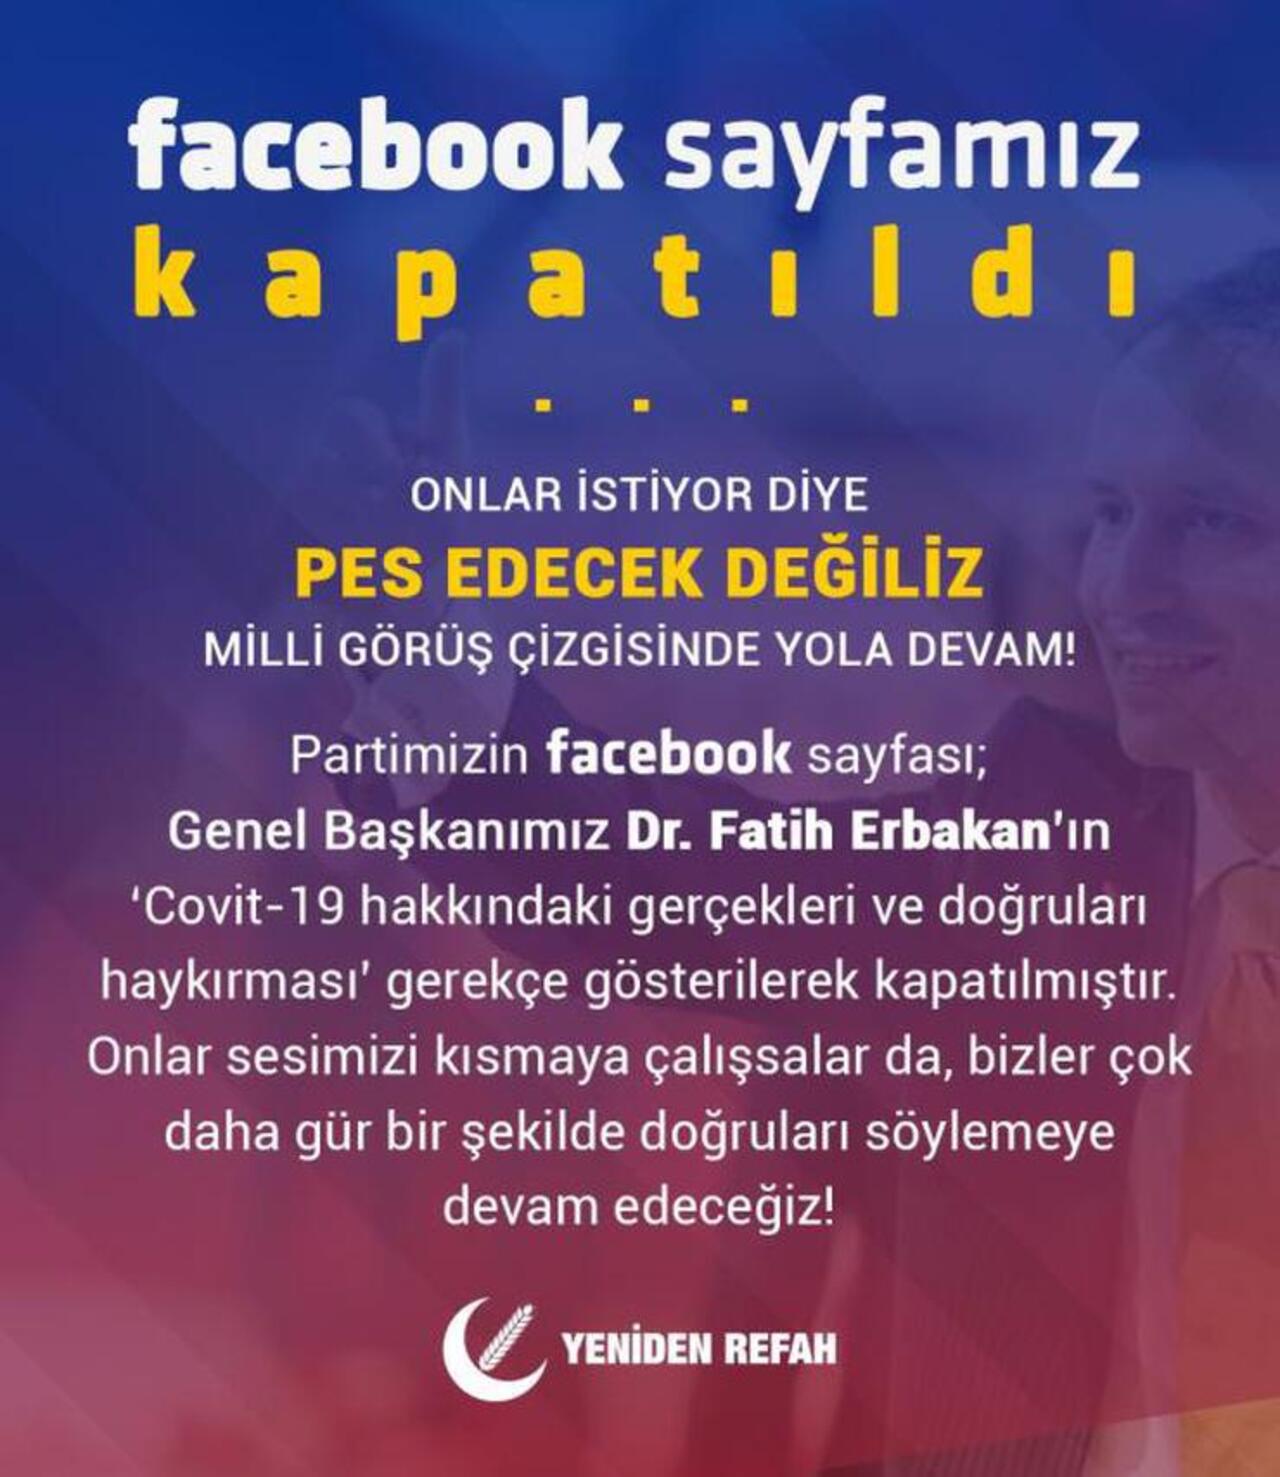 Facebook'tan Fatih Erbakan'a büyük şok! Sayfasını kapattı..